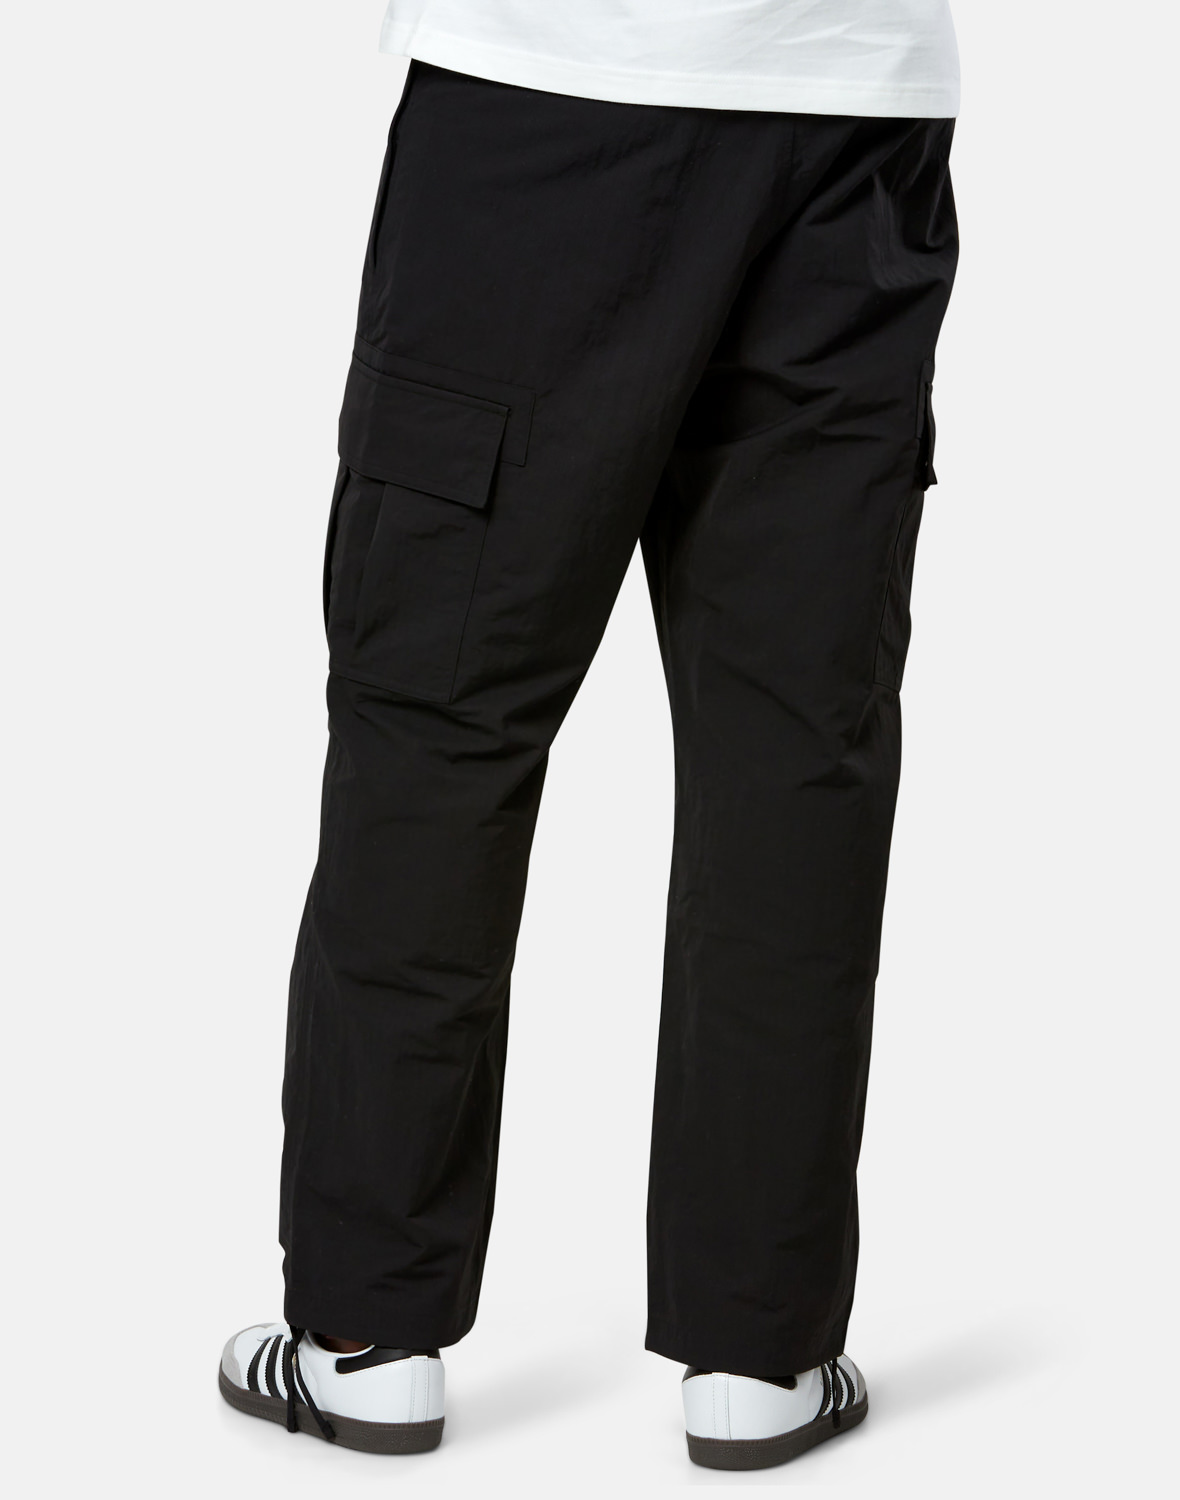 adidas Originals Mens Premium Essentials Cargo Pants - Black | Life ...